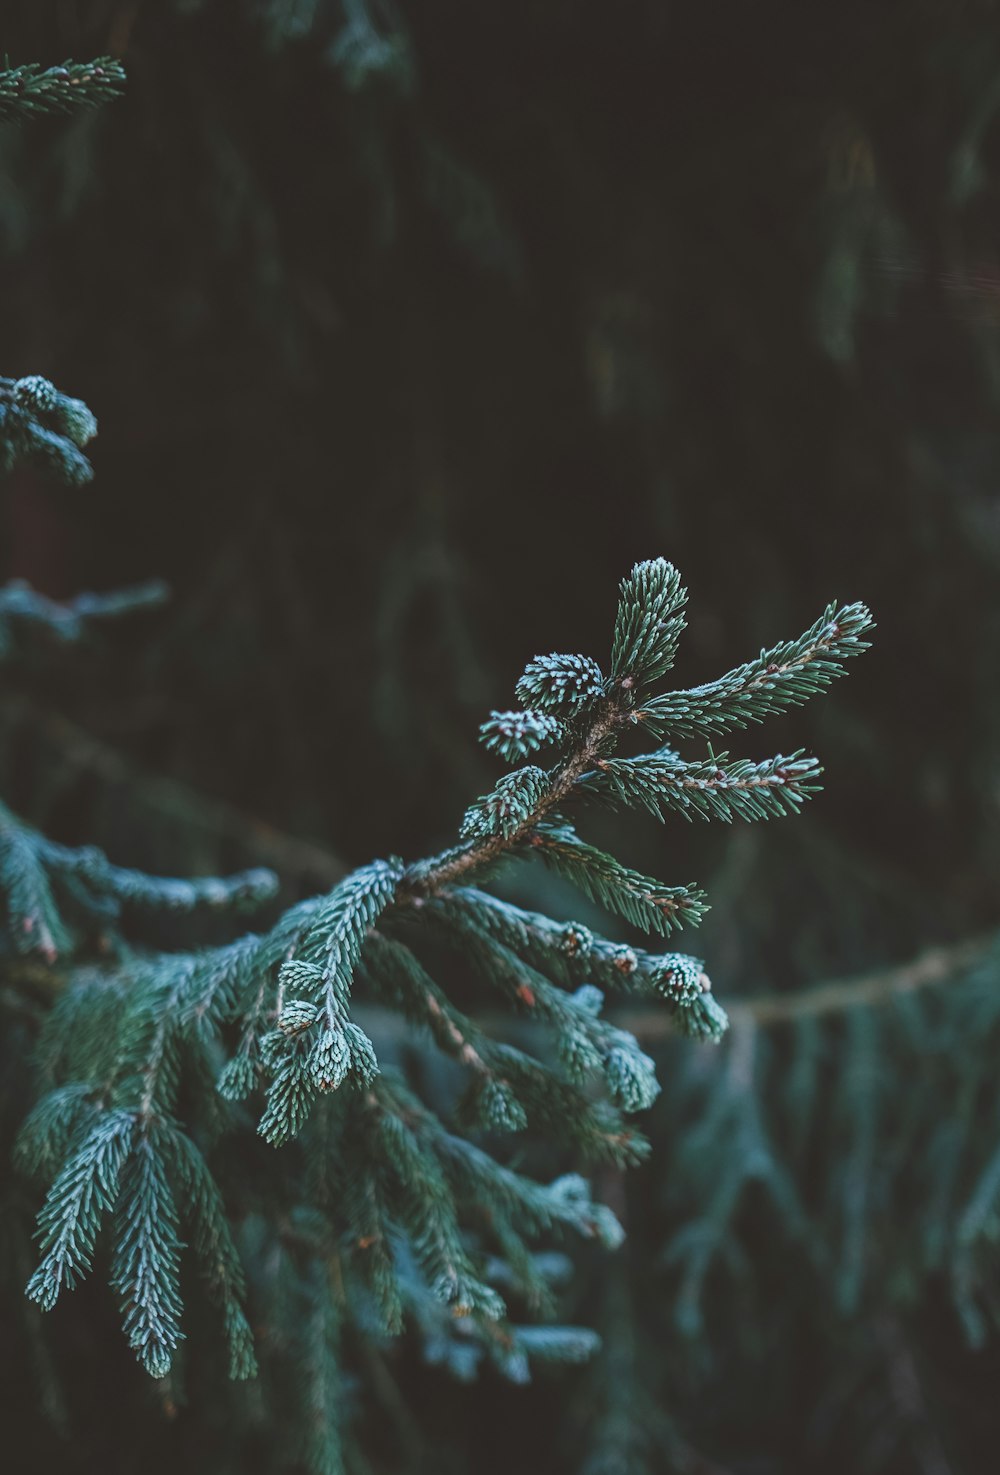 green fir tree in tilt shift lens photography